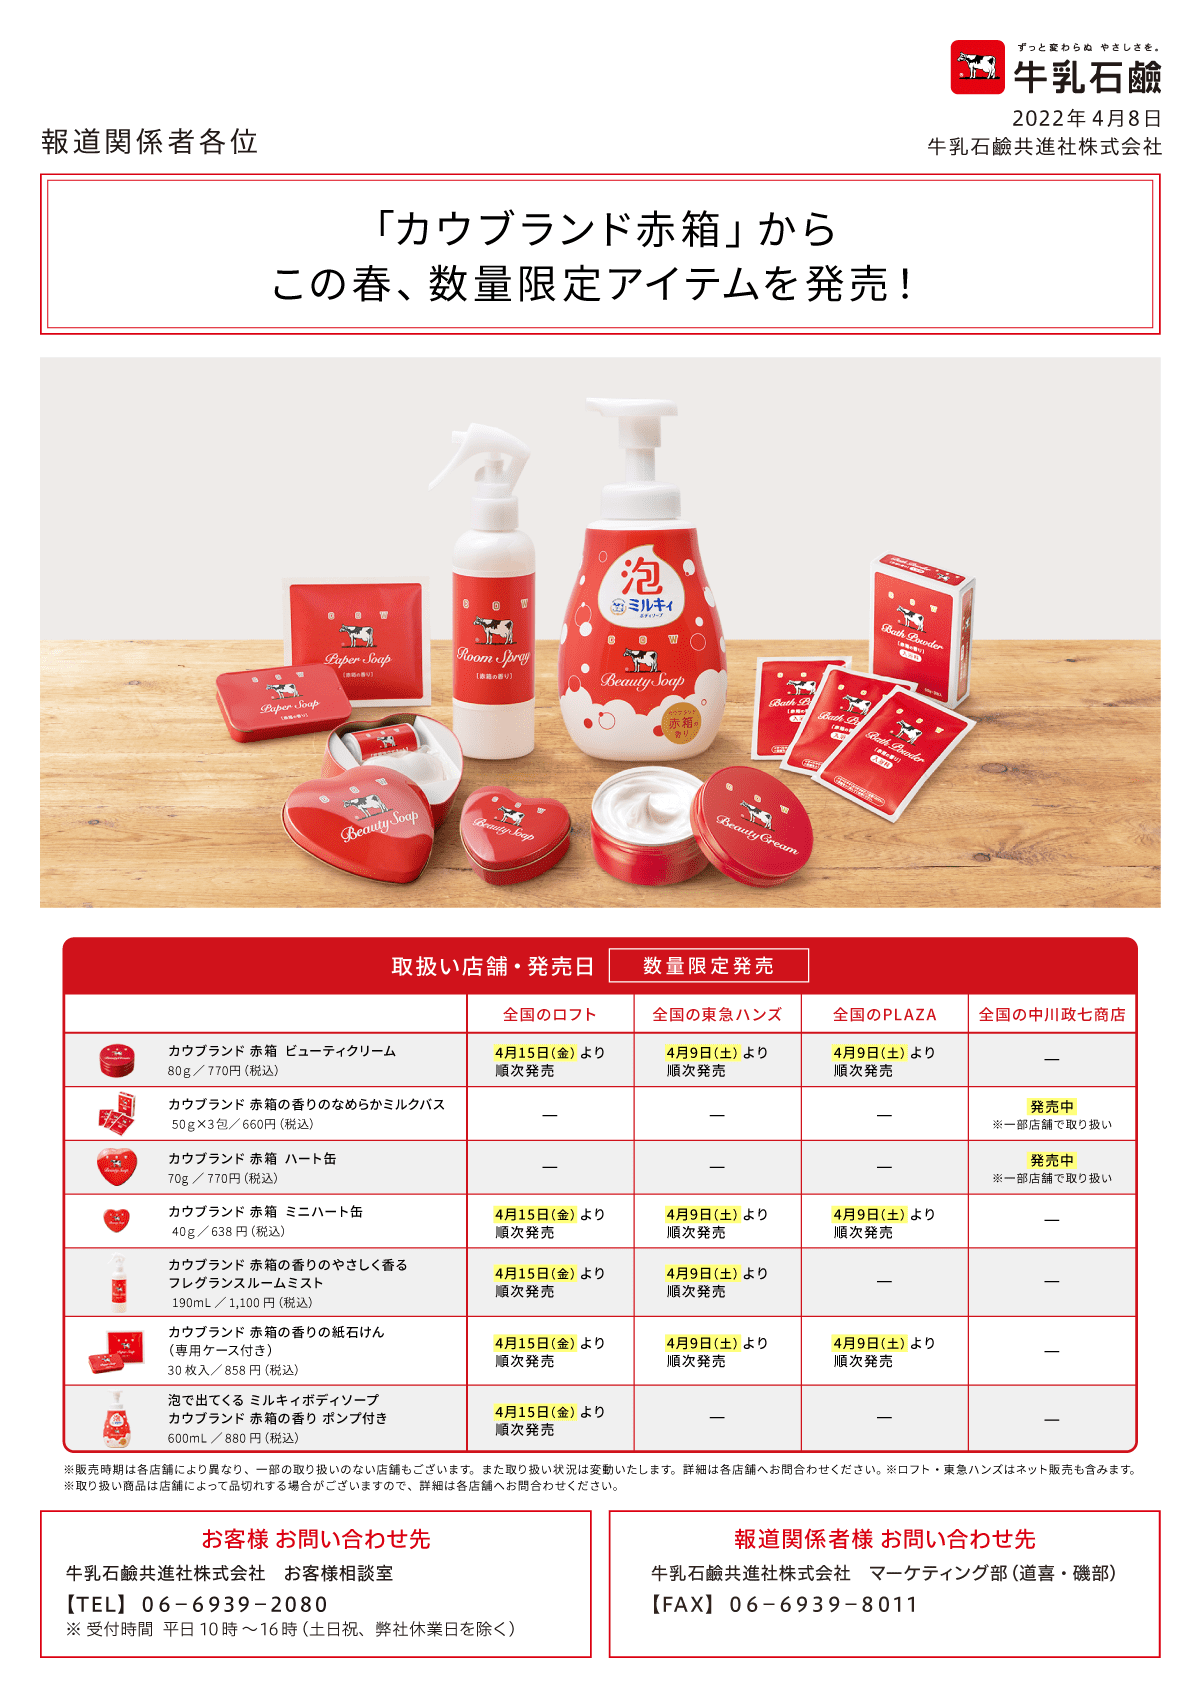 牛乳石鹸 カウブランド 赤箱(1コ入(100g))